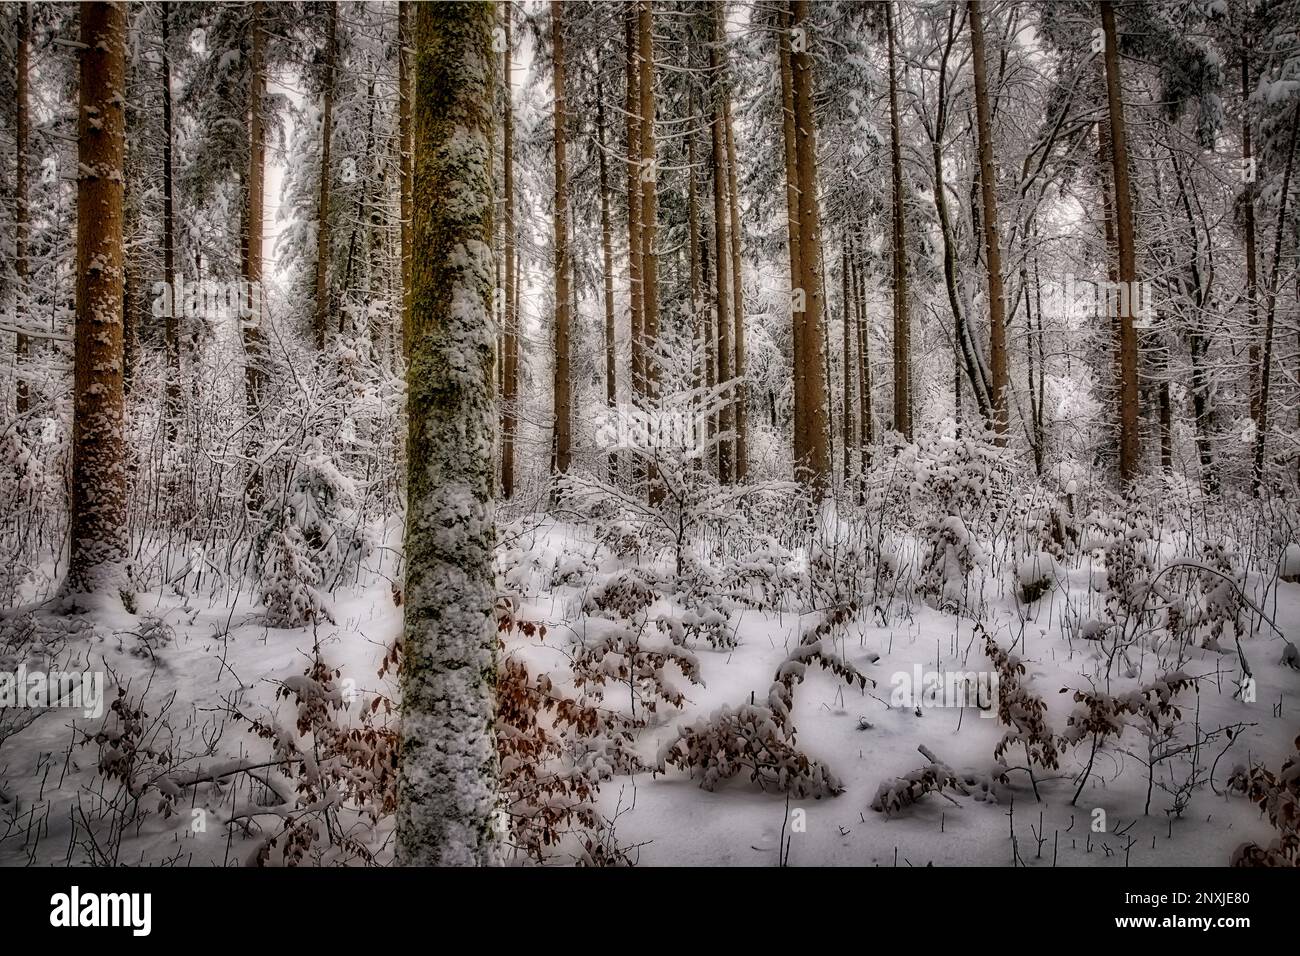 ART PHOTOGRAPHIQUE : le mystérieux silence des arbres (HDR-image d'Edmund Nagele FRPS) Banque D'Images